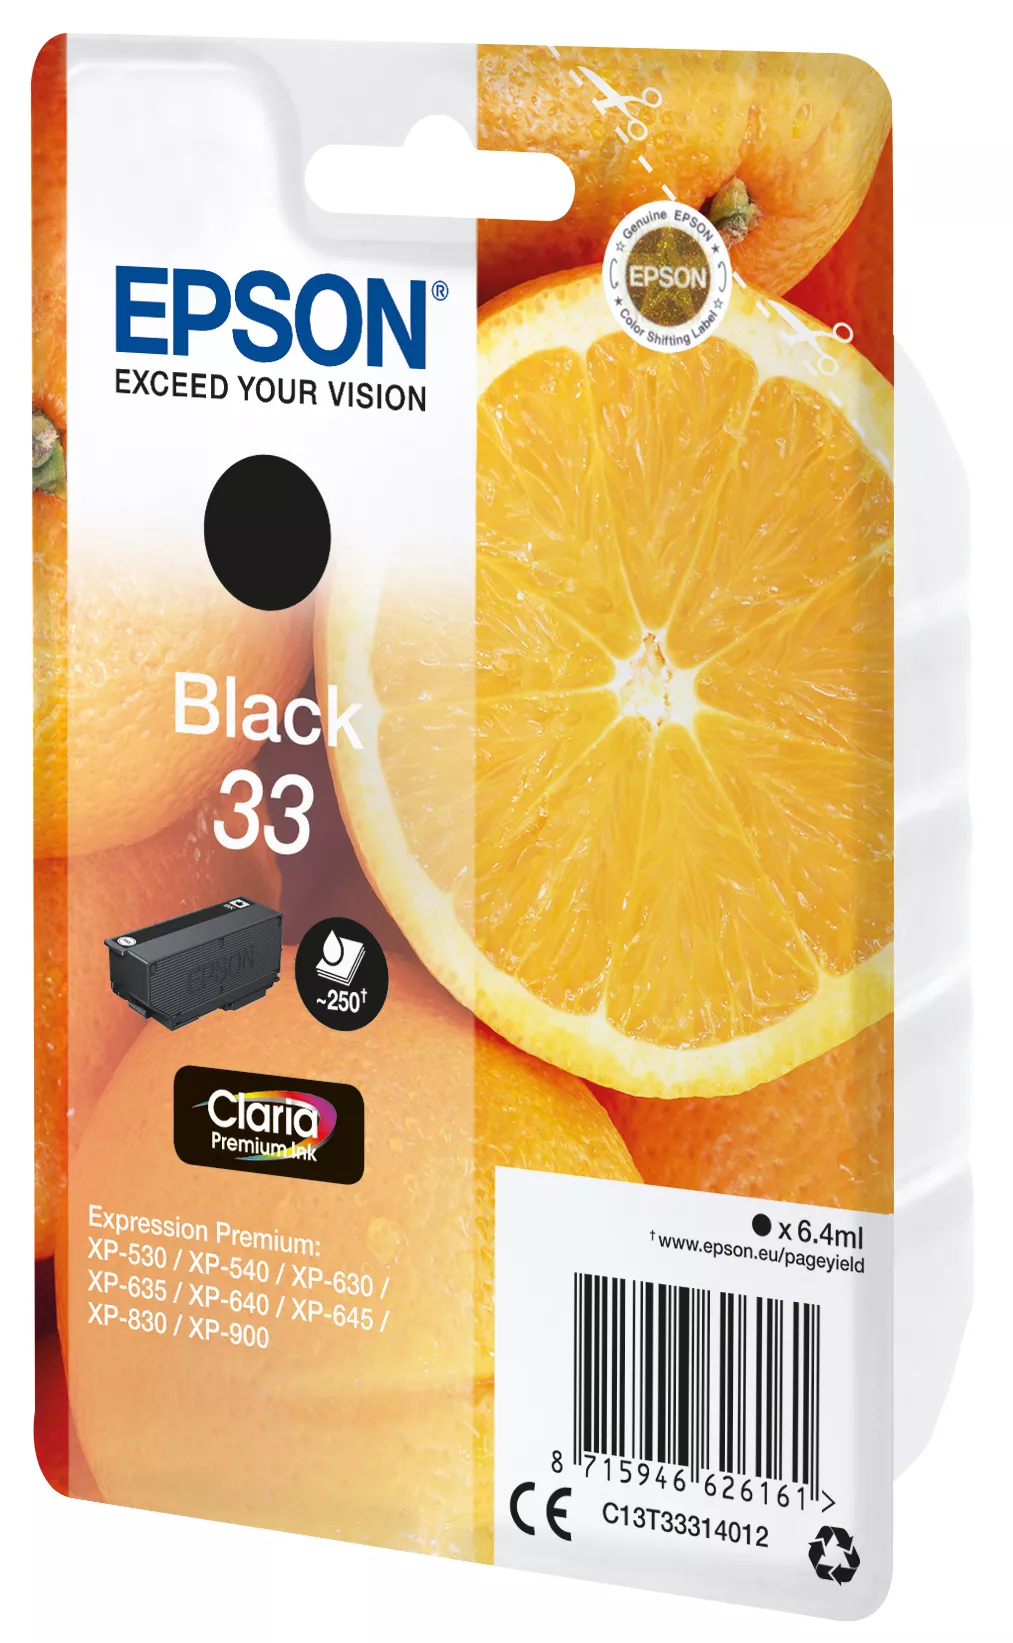 Vente EPSON Cartouche Oranges Encre Claria Premium Noir Epson au meilleur prix - visuel 2